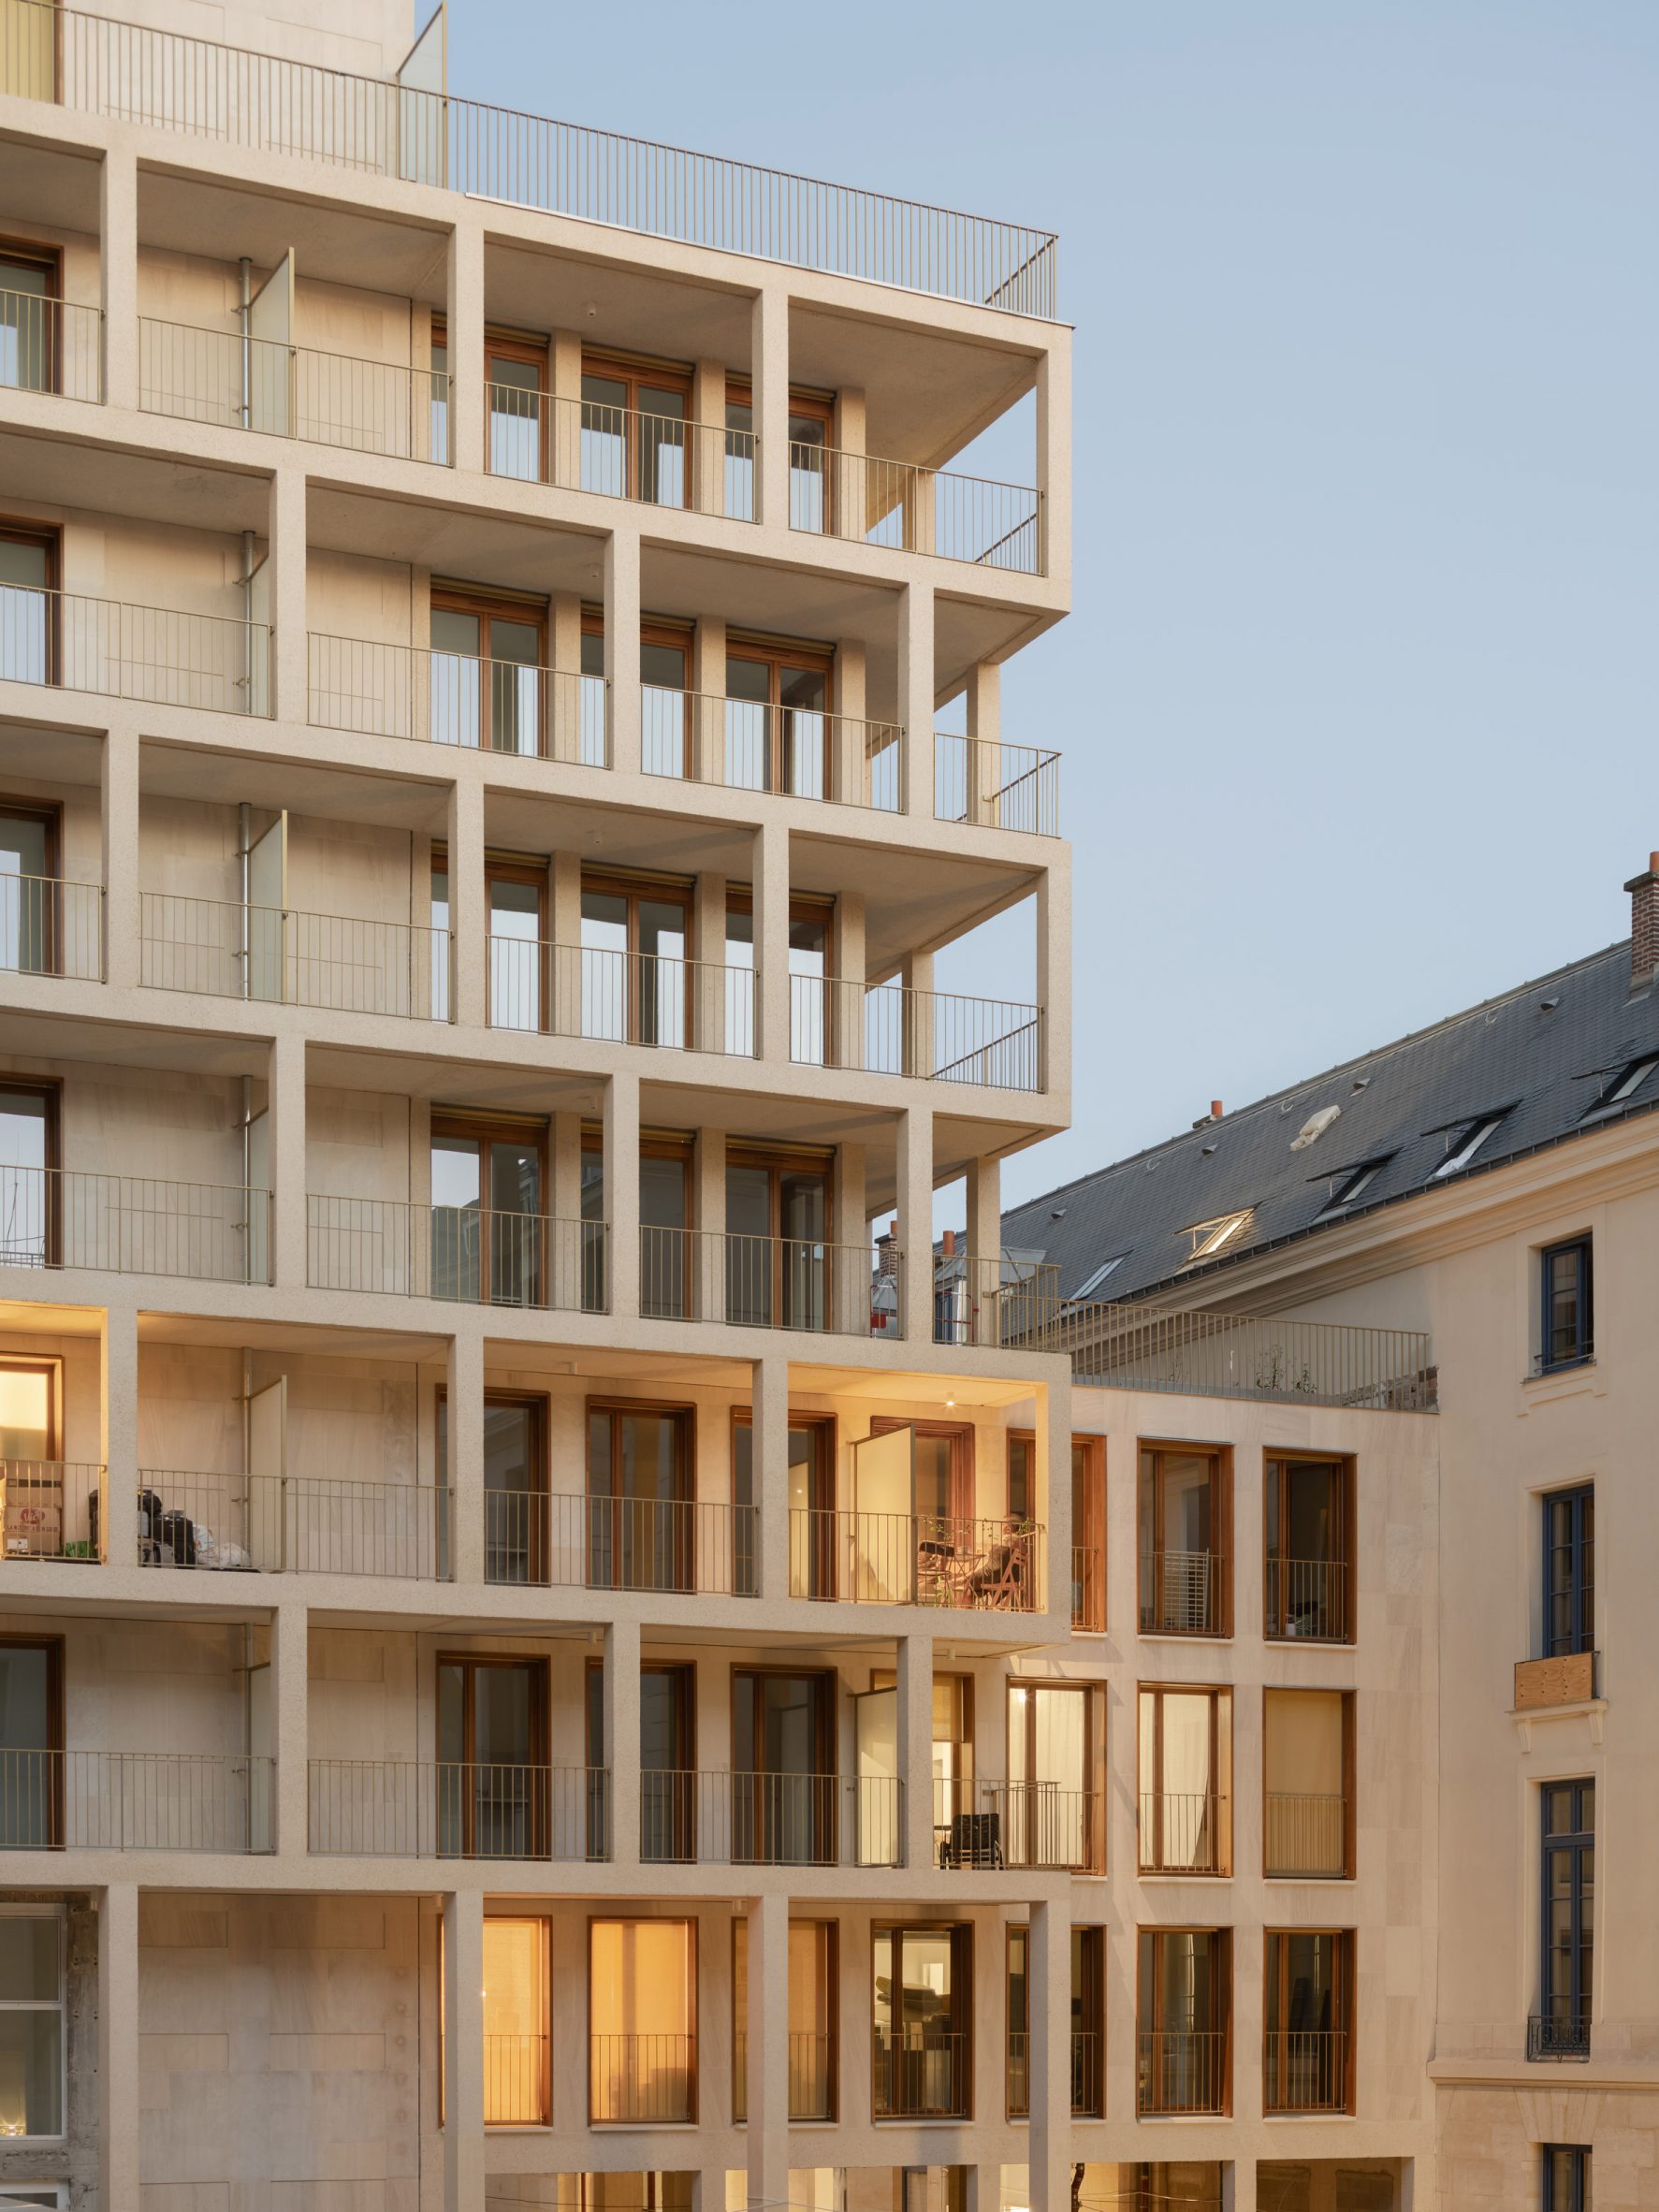 Îlot Saint-Germain by Francois Brugel Architectes Associes, h2o Architectes, and Antoine Regnault Architecture